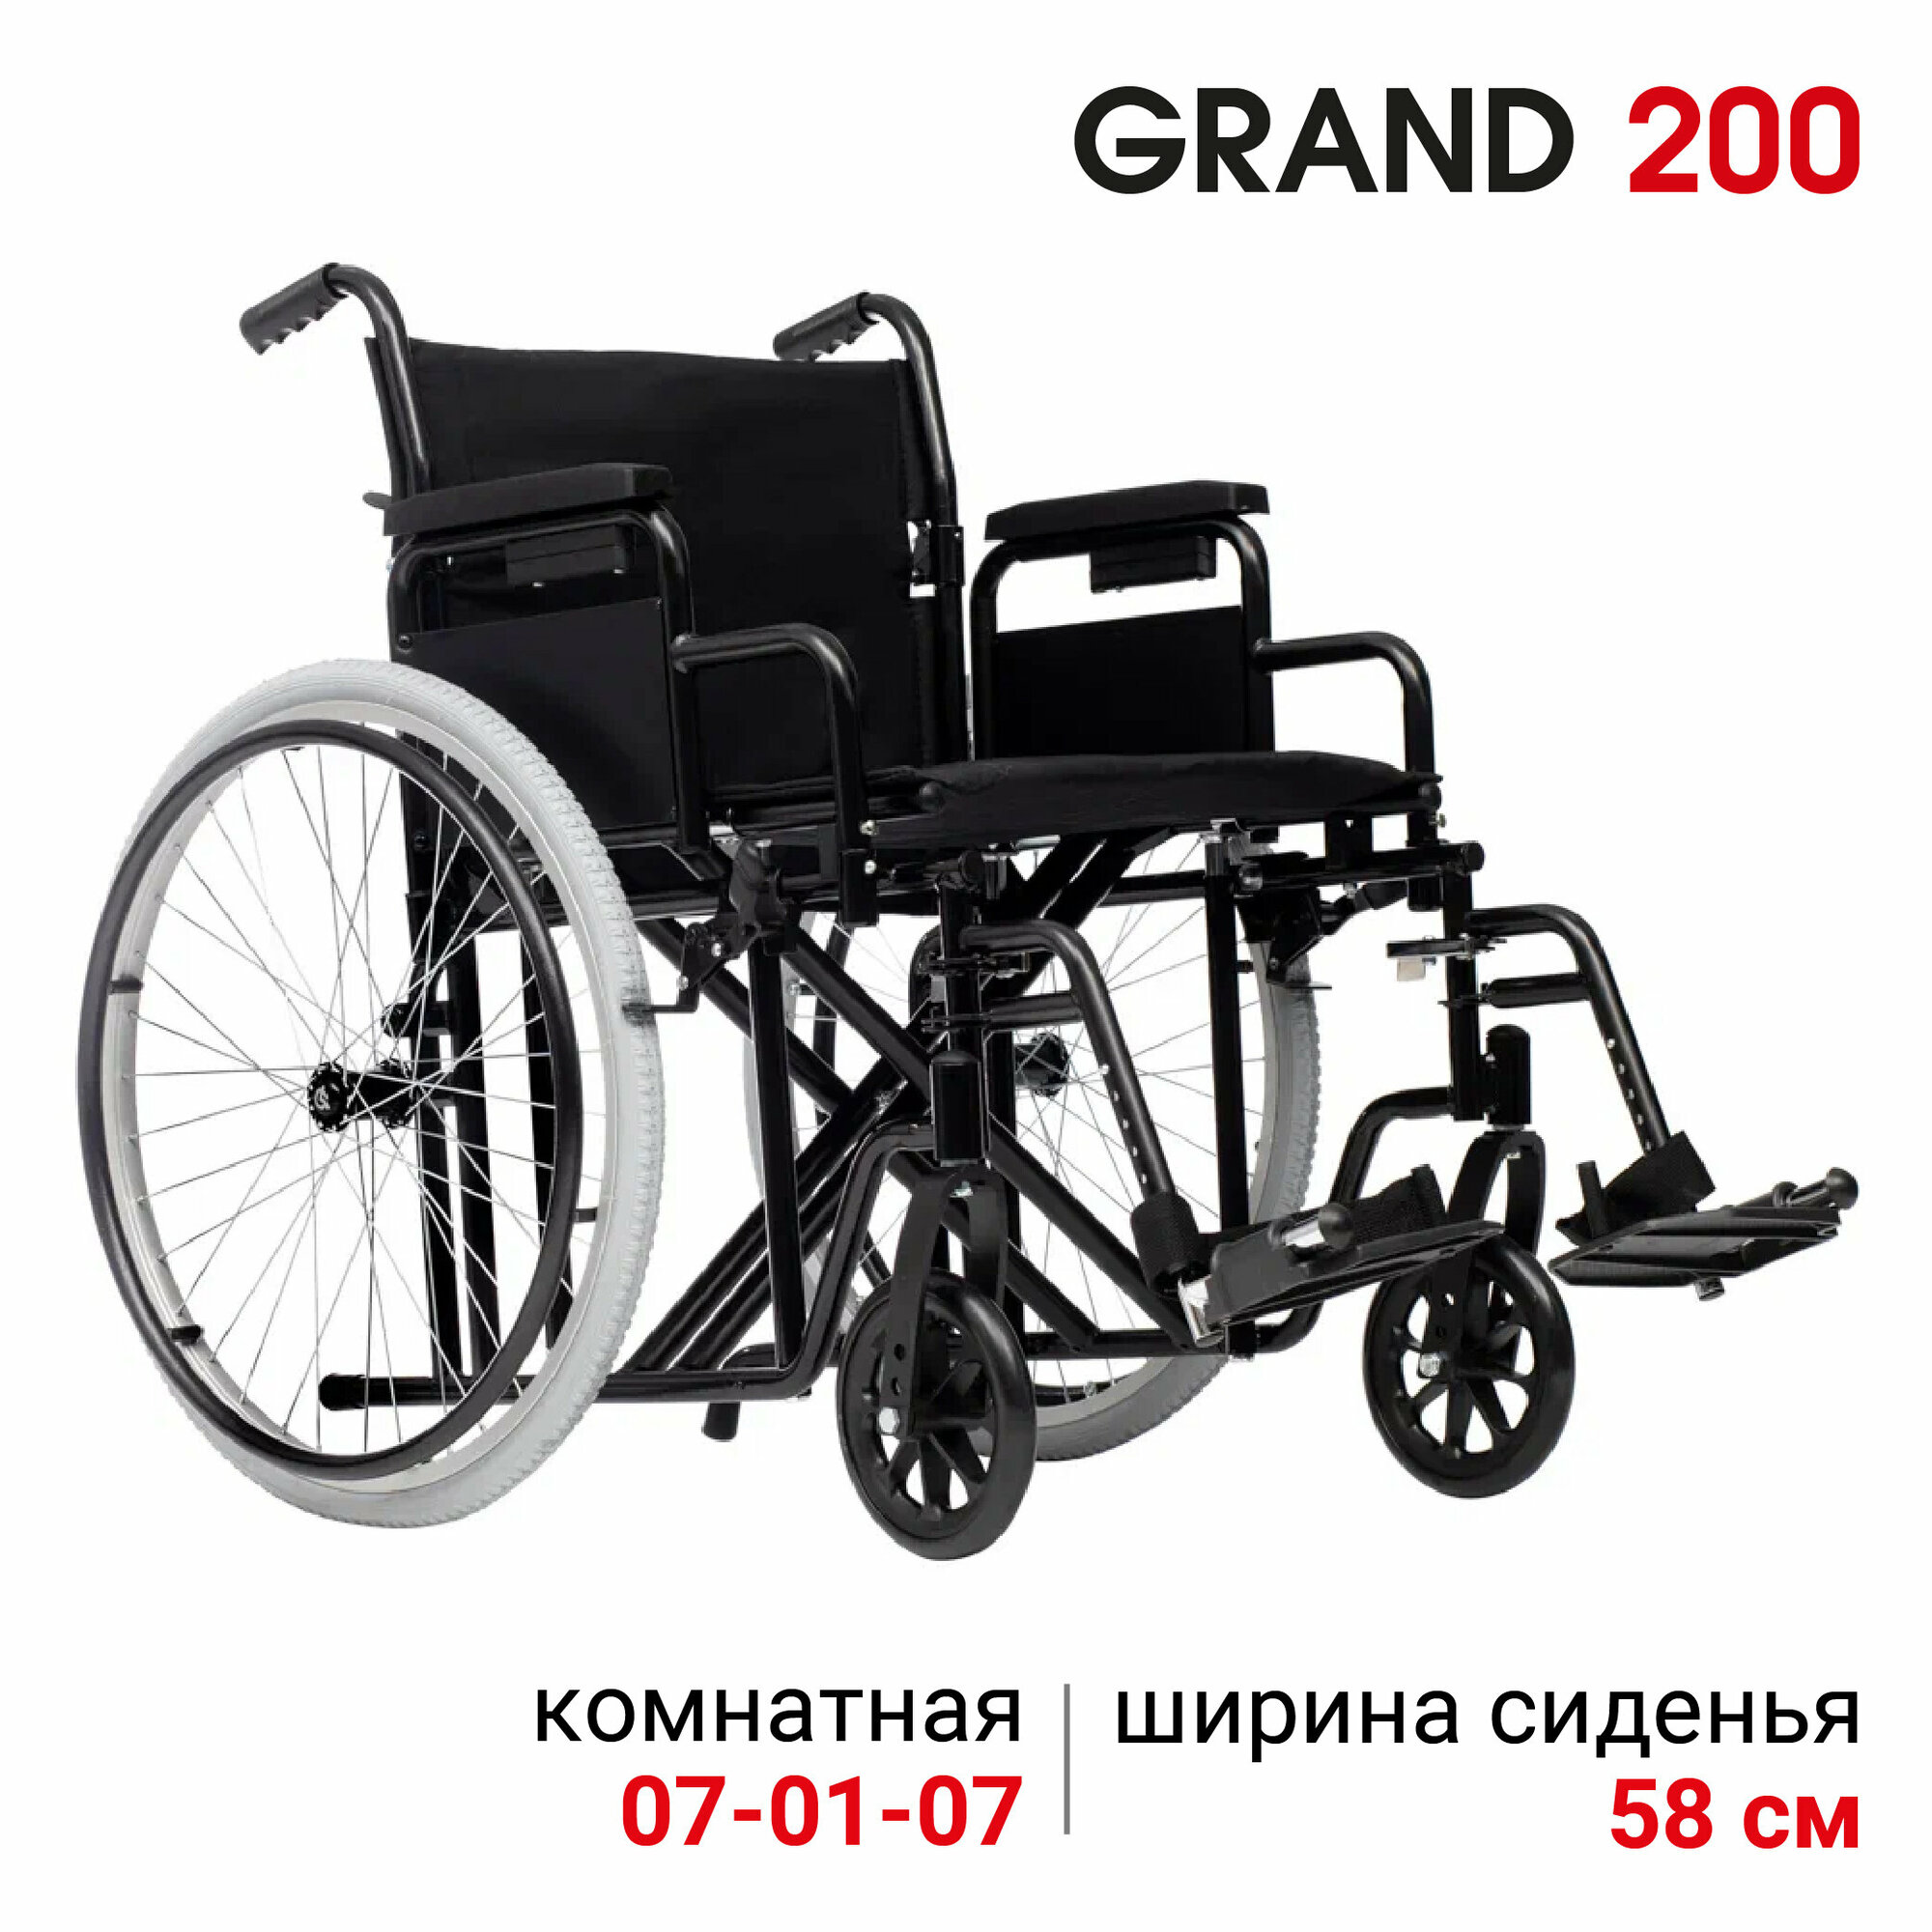 Кресло - коляска инвалидная комнатная механическая повышенной грузоподъемности Ortonica Trend 25/Grand 200 ширина сиденья 58 см цельнолитые колеса, код 07-01-08